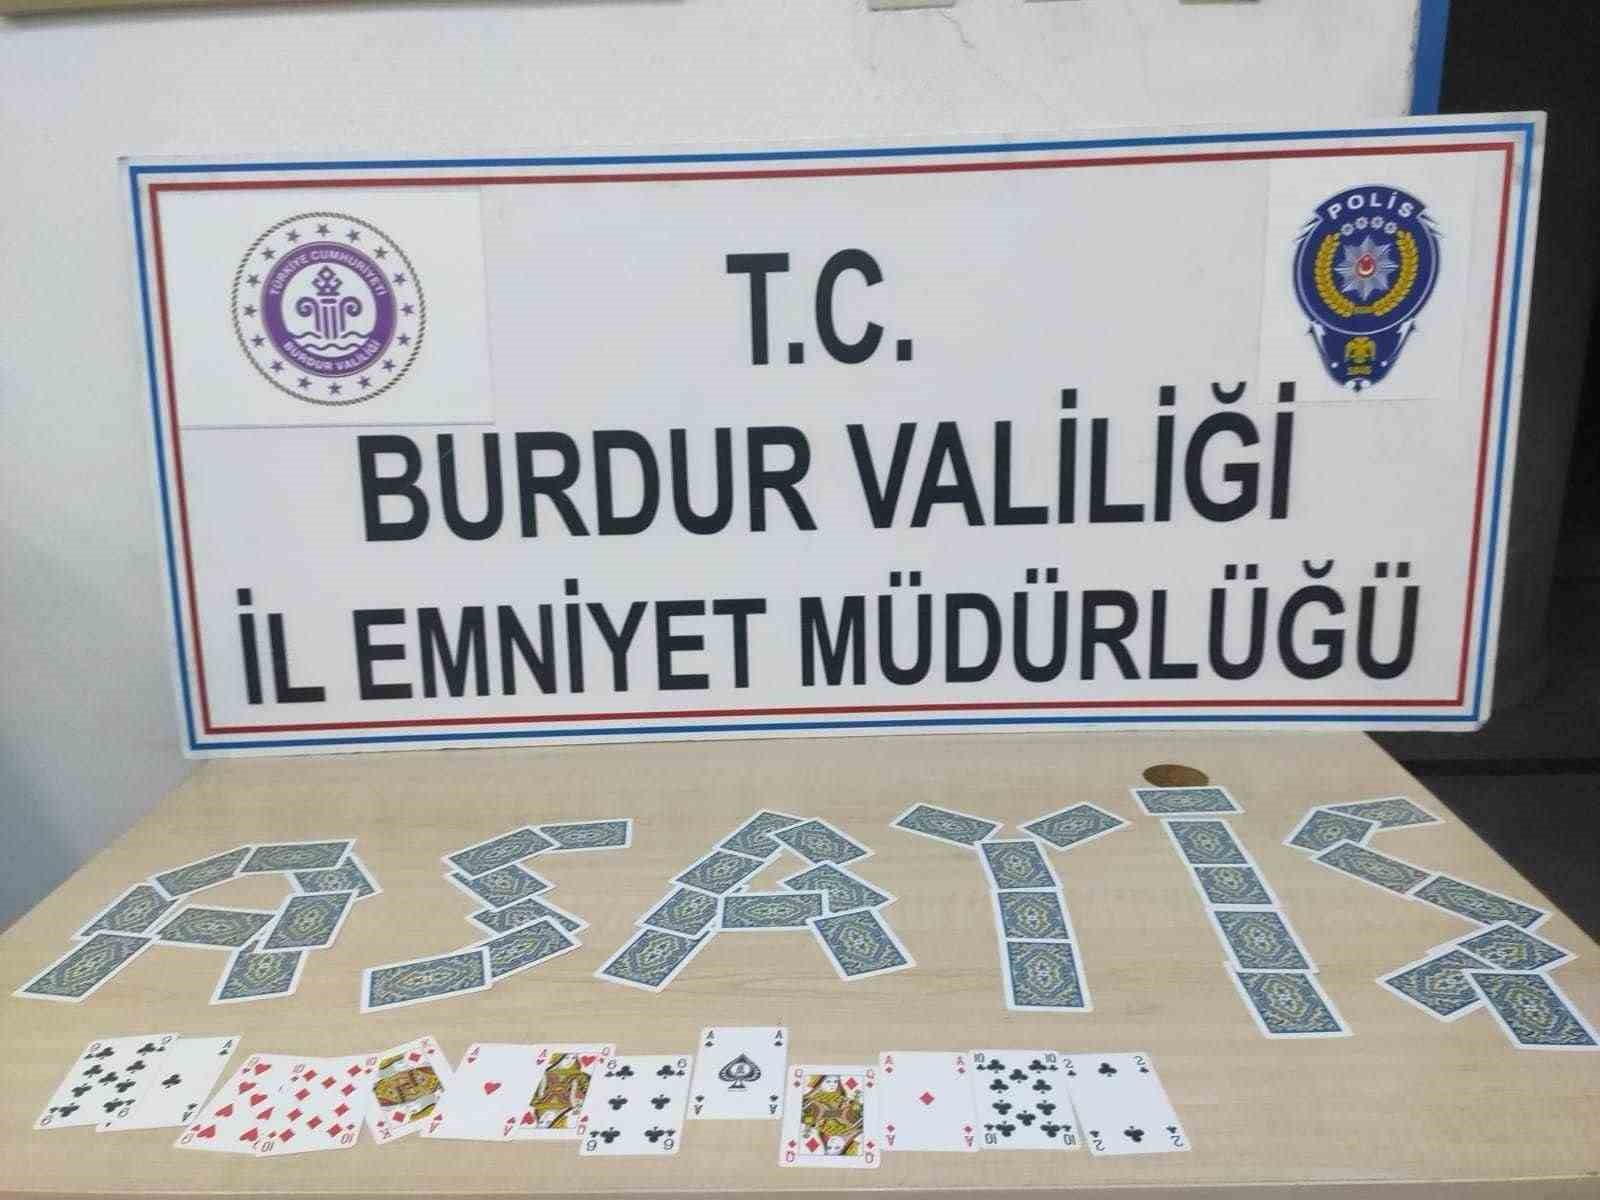 Burdur’da kumar operasyonu: 4 kişiye işlem yapıldı